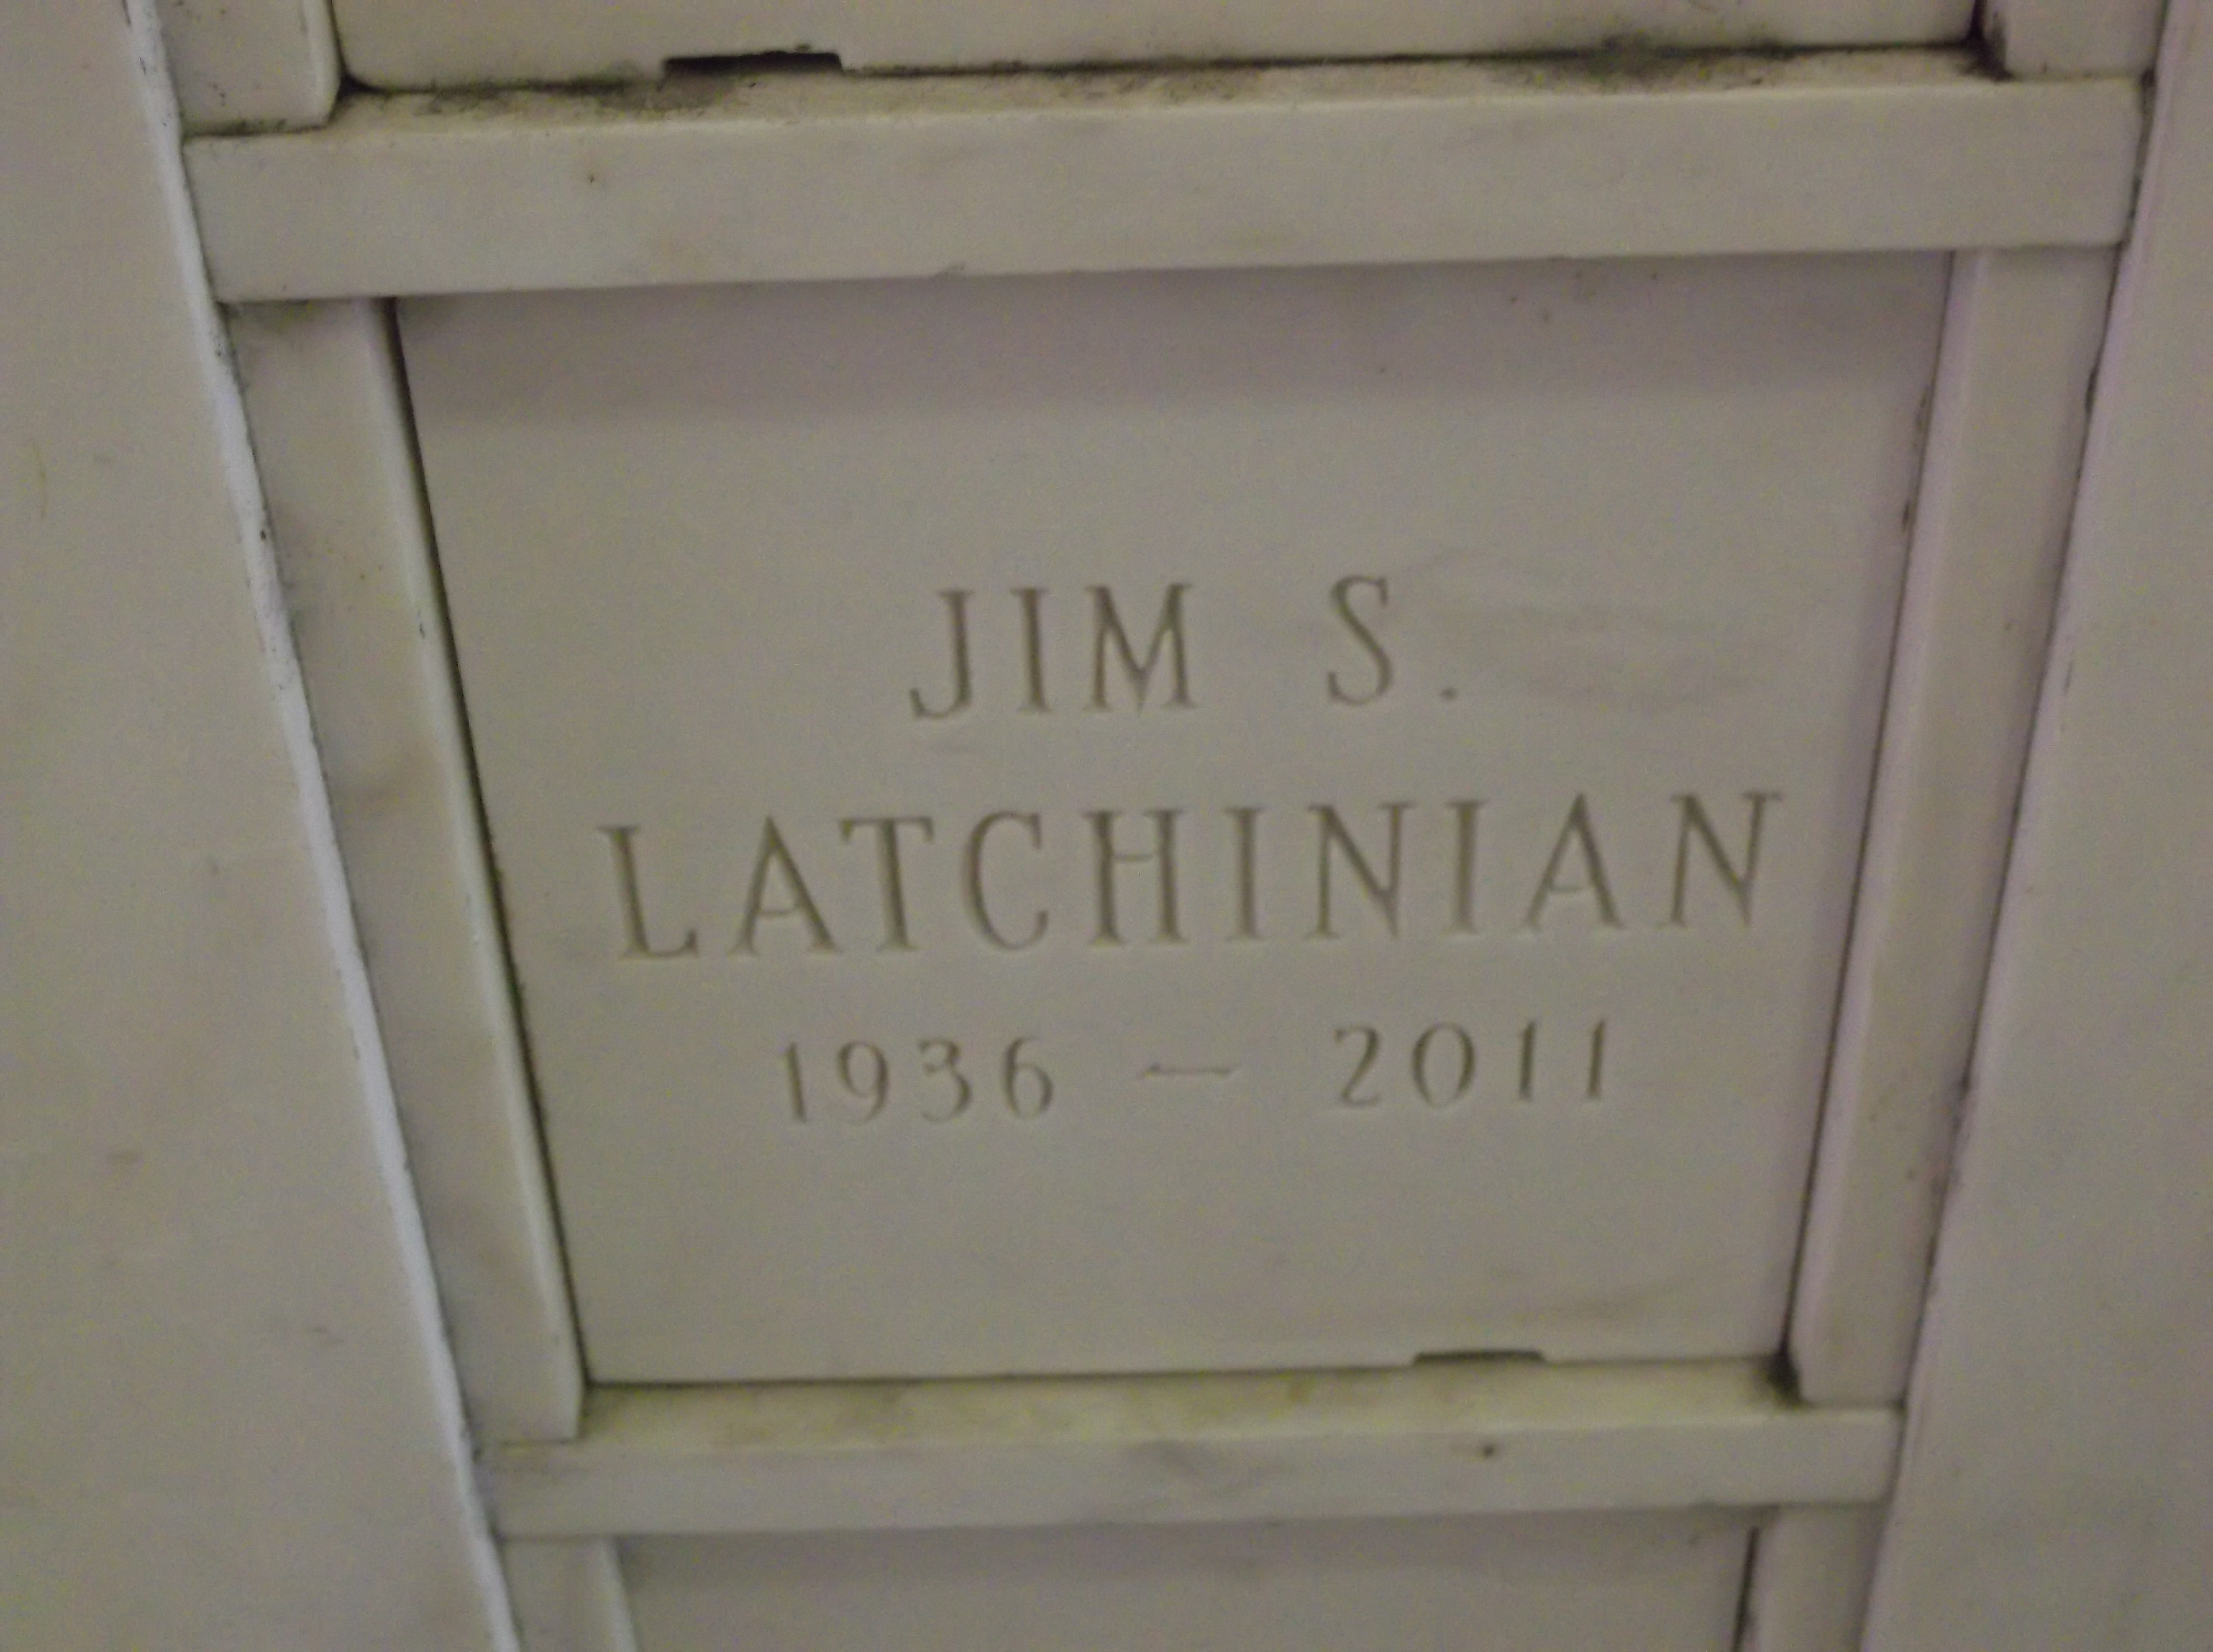 Jim S Latchinian